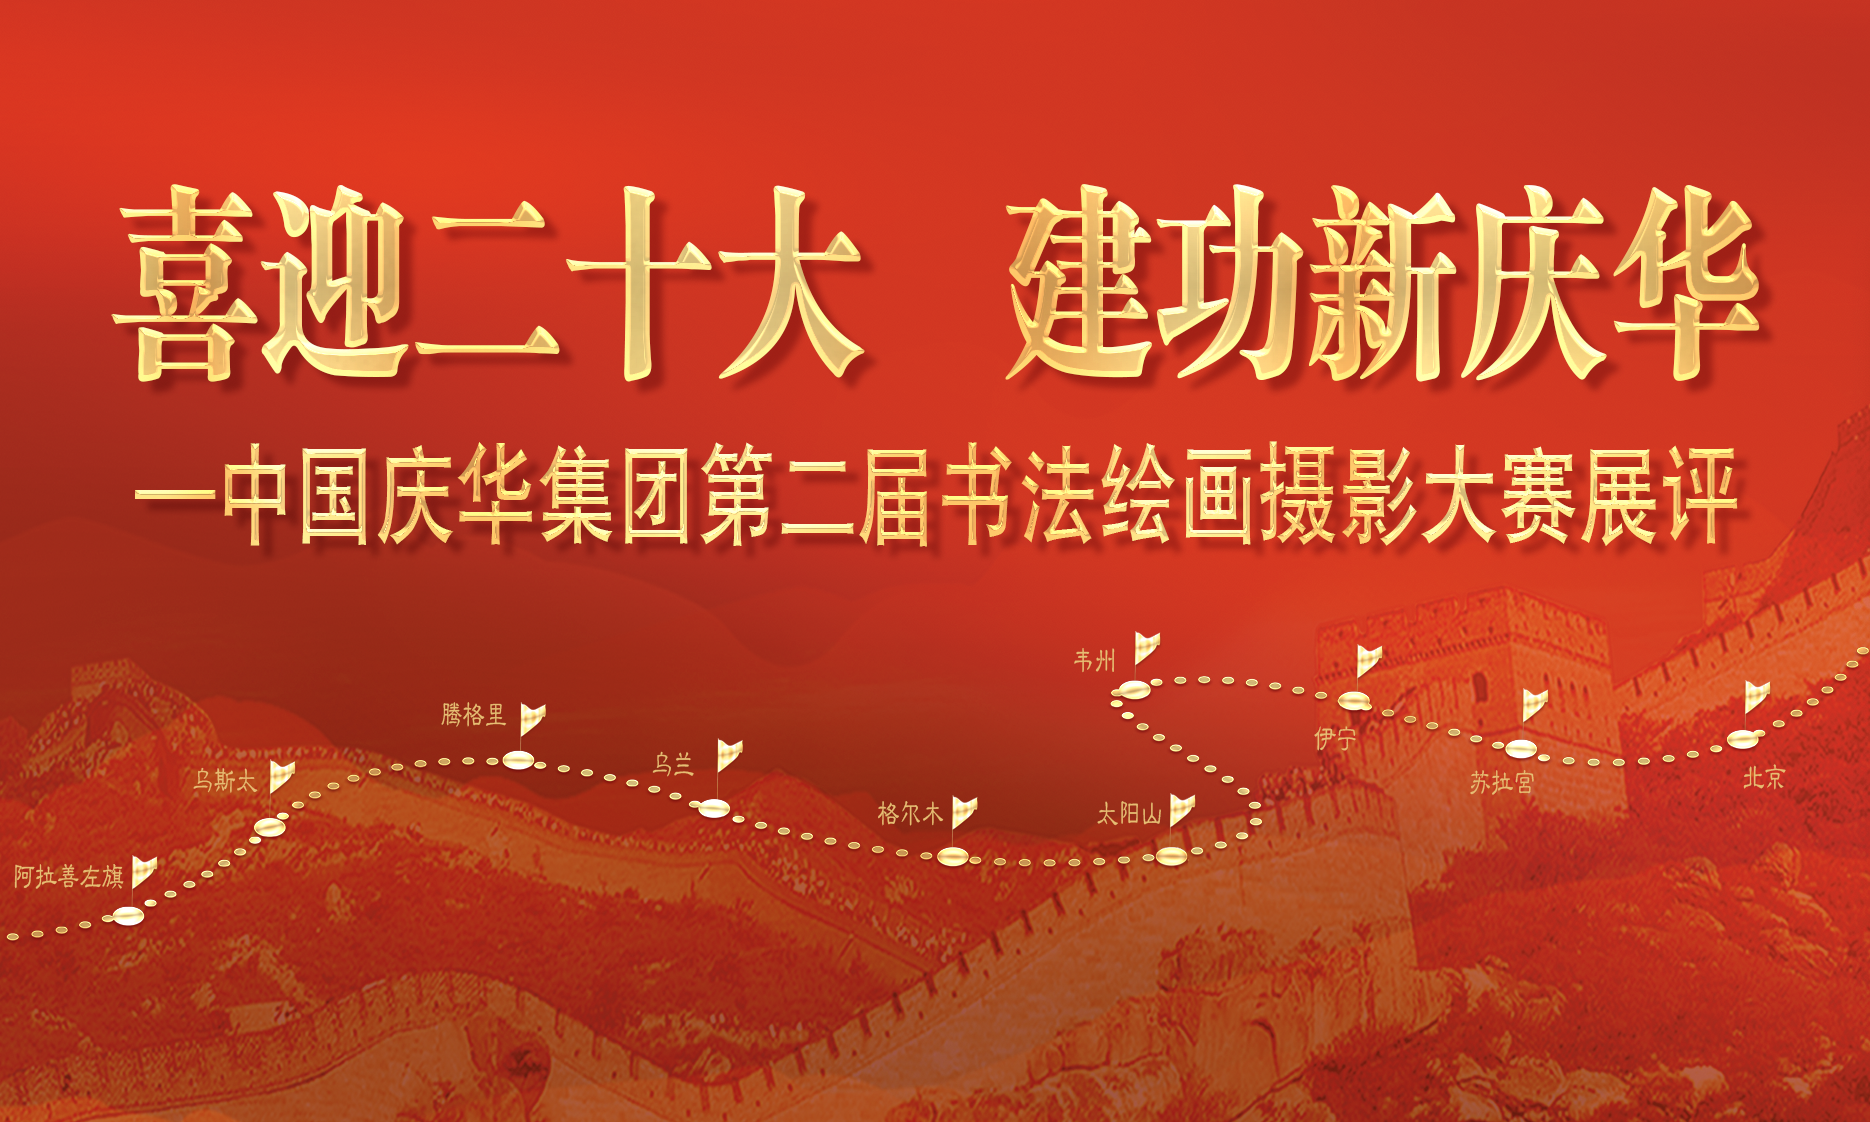 中国庆华能源集团“喜迎二十大 建功新庆华”书法、绘画、摄影展